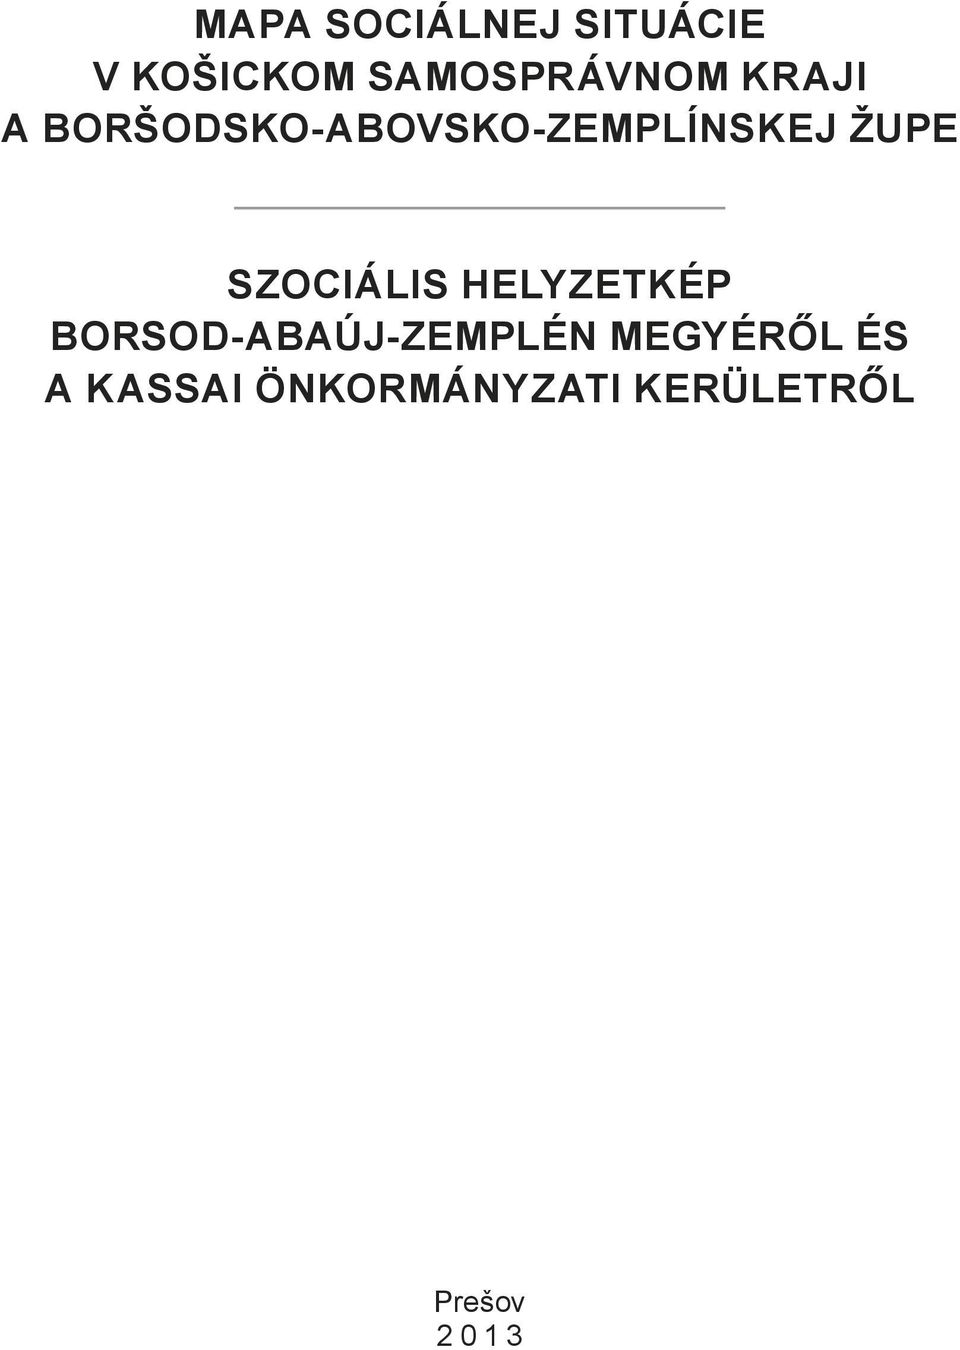 Szociális helyzetkép Borsod-aBaúj-Zemplén